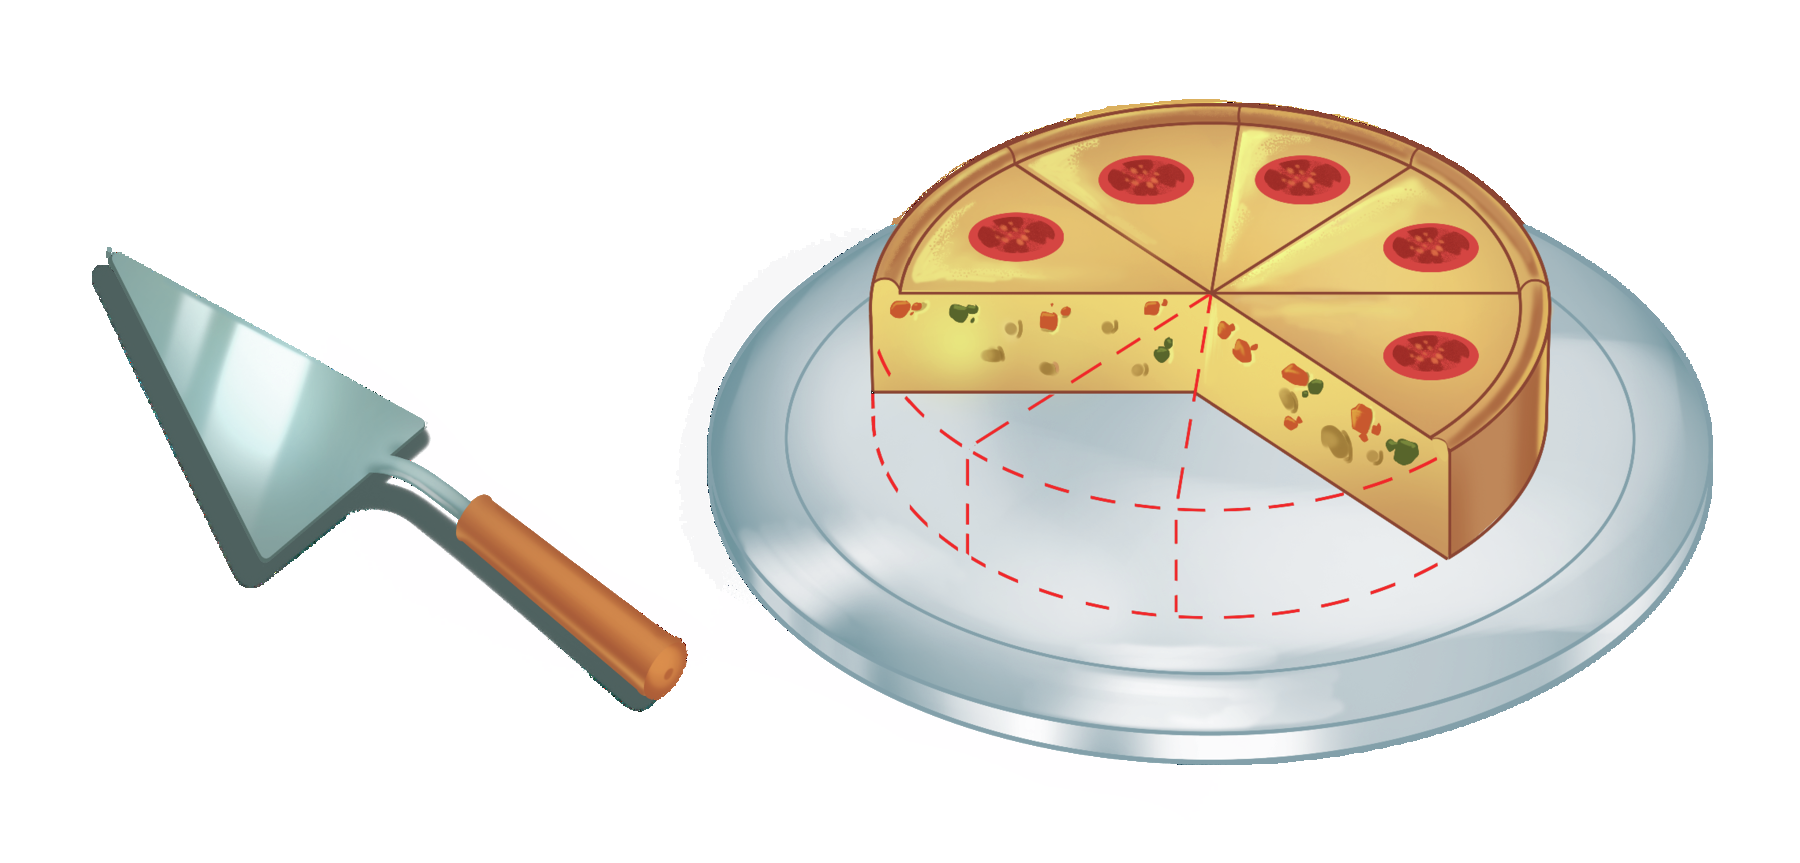 Ilustração: 5 pedaços iguais de uma torta circular que inicialmente foi dividida em 8 pedaços iguais. O contorno dos 3 pedaços que foram consumidos aparece pontilhado. À esquerda aparece uma espátula.